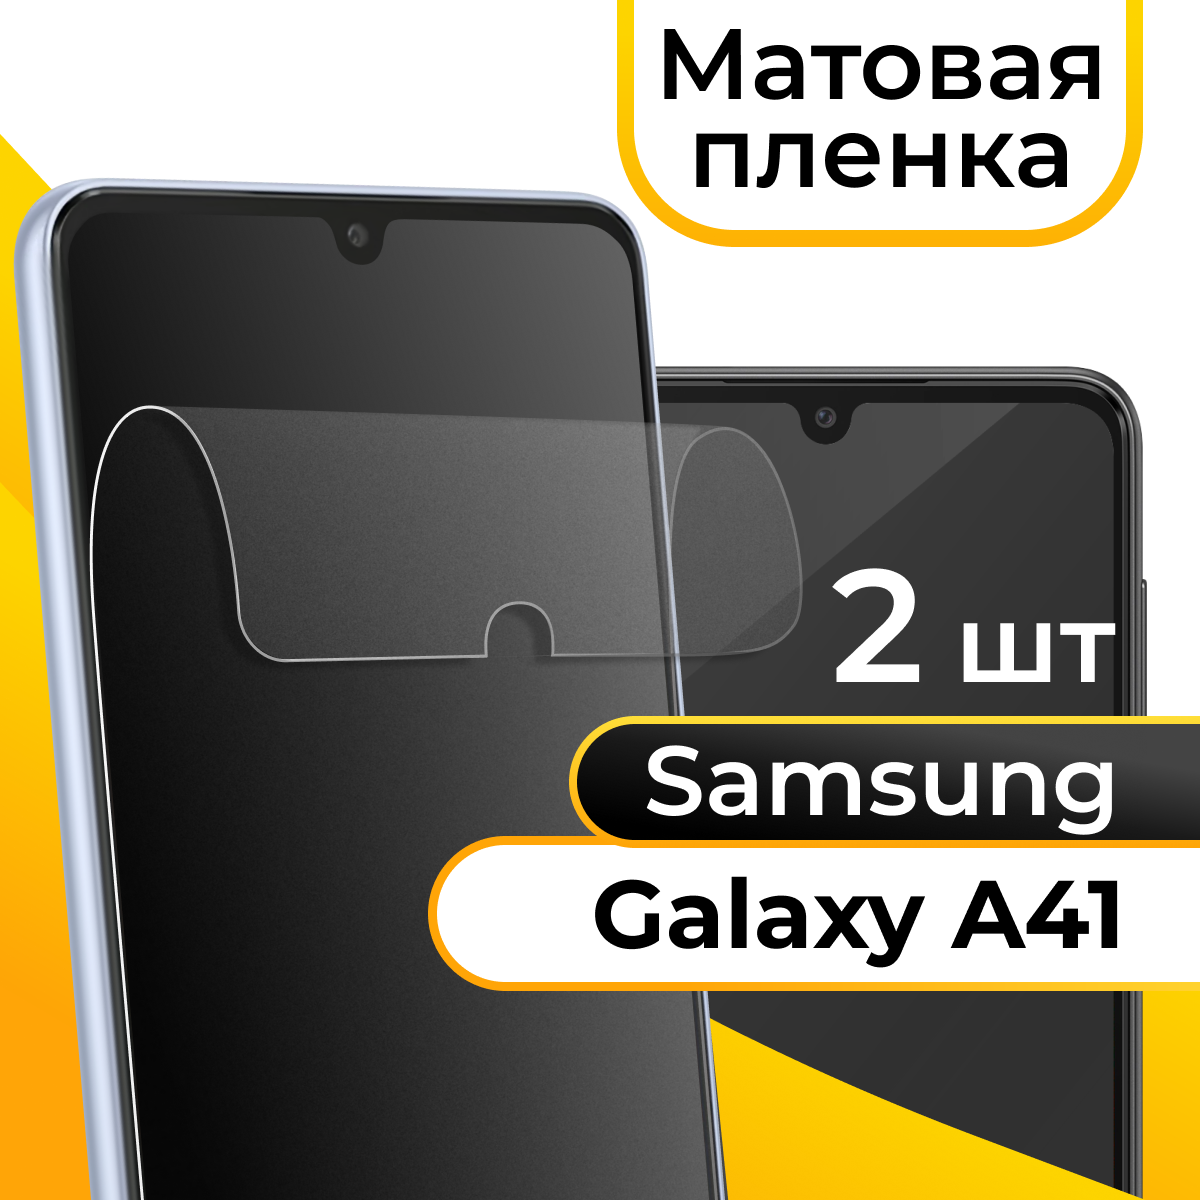 Комплект 2 шт. Матовая пленка для смартфона Samsung Galaxy A41 / Защитная противоударная пленка на телефон Самсунг Галакси А41 / Гидрогелевая пленка